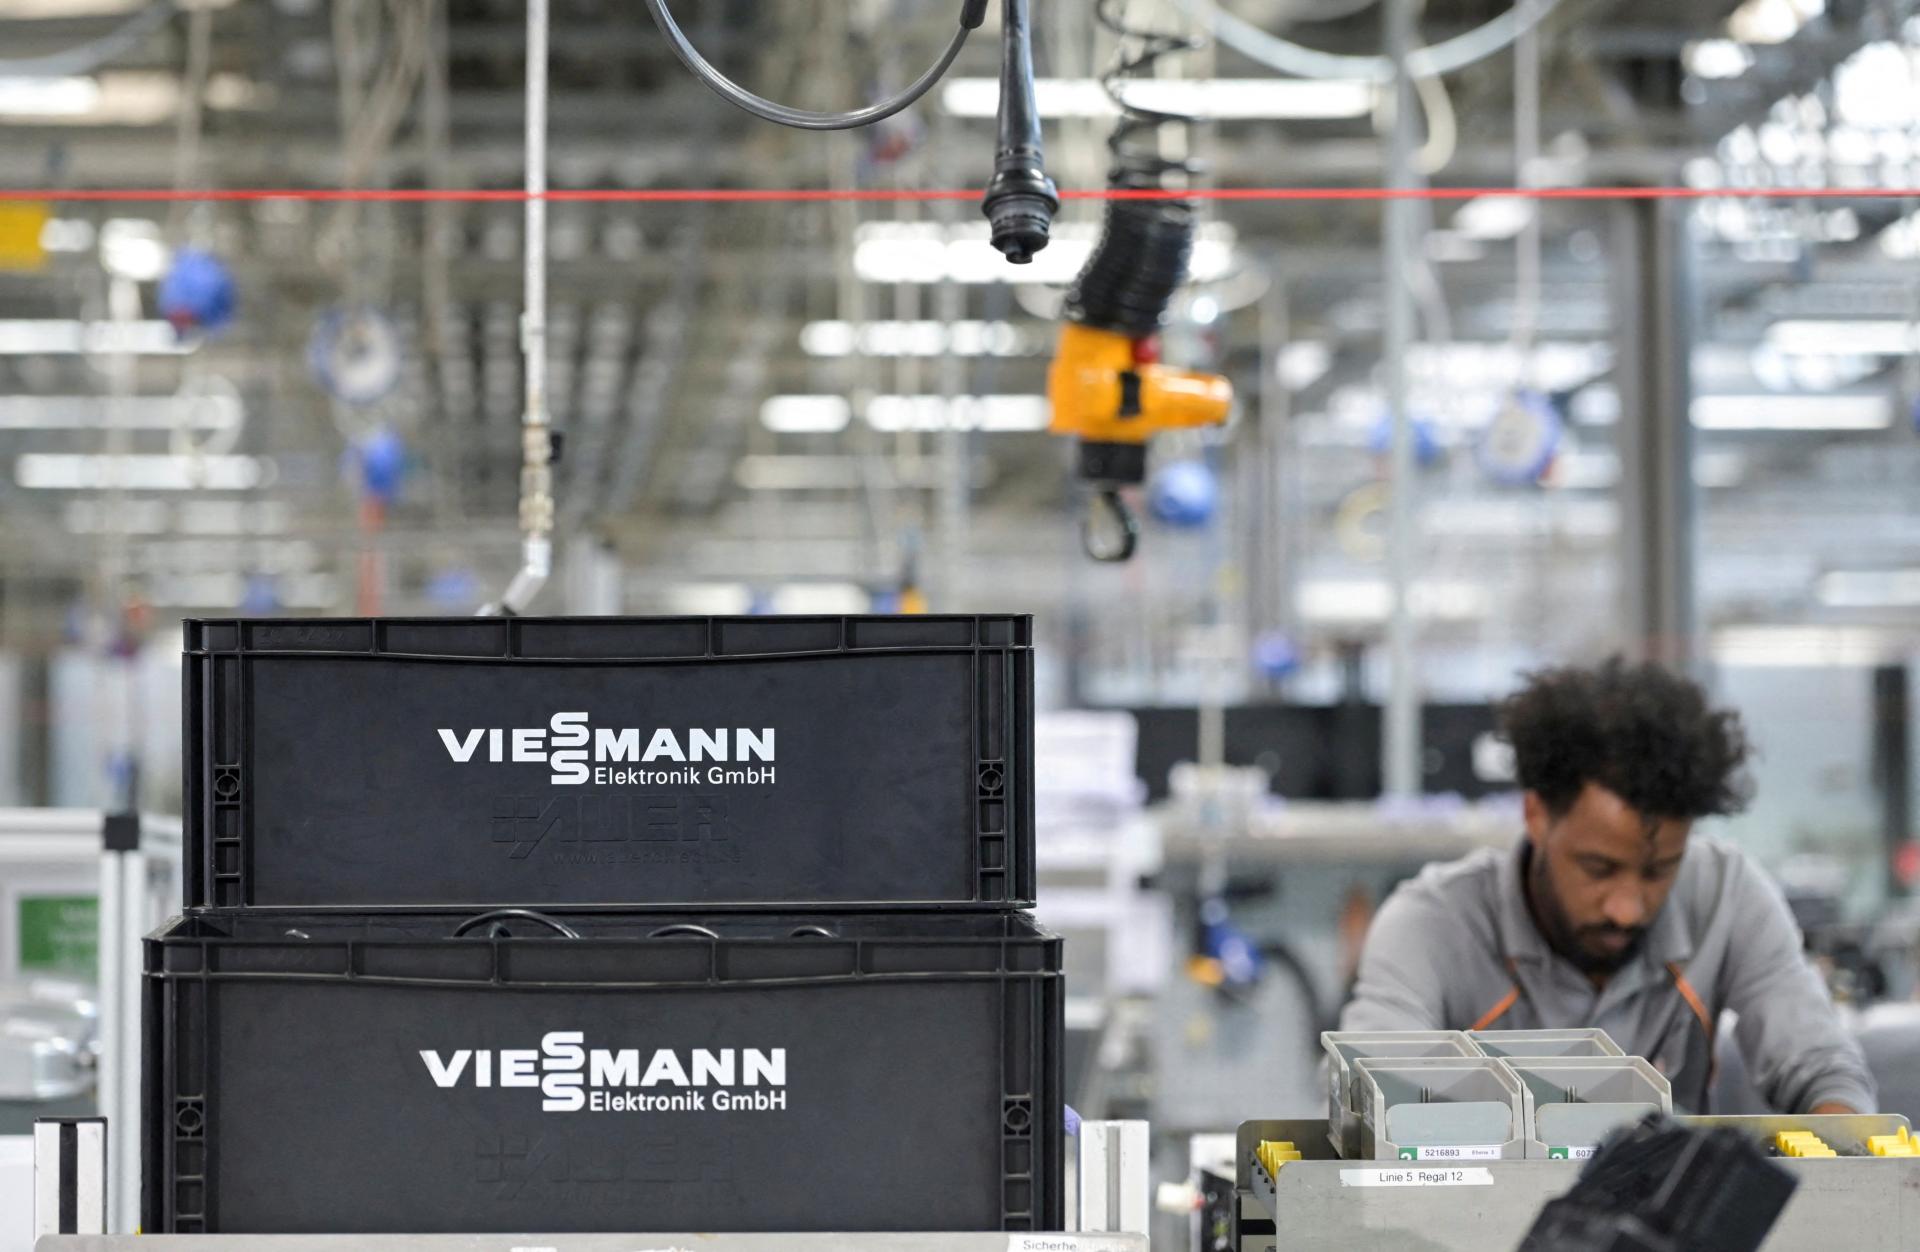 Nemecko preskúma predaj výrobcu tepelných čerpadiel Viessmann Američanom. Ide o 12 miliardový obchod